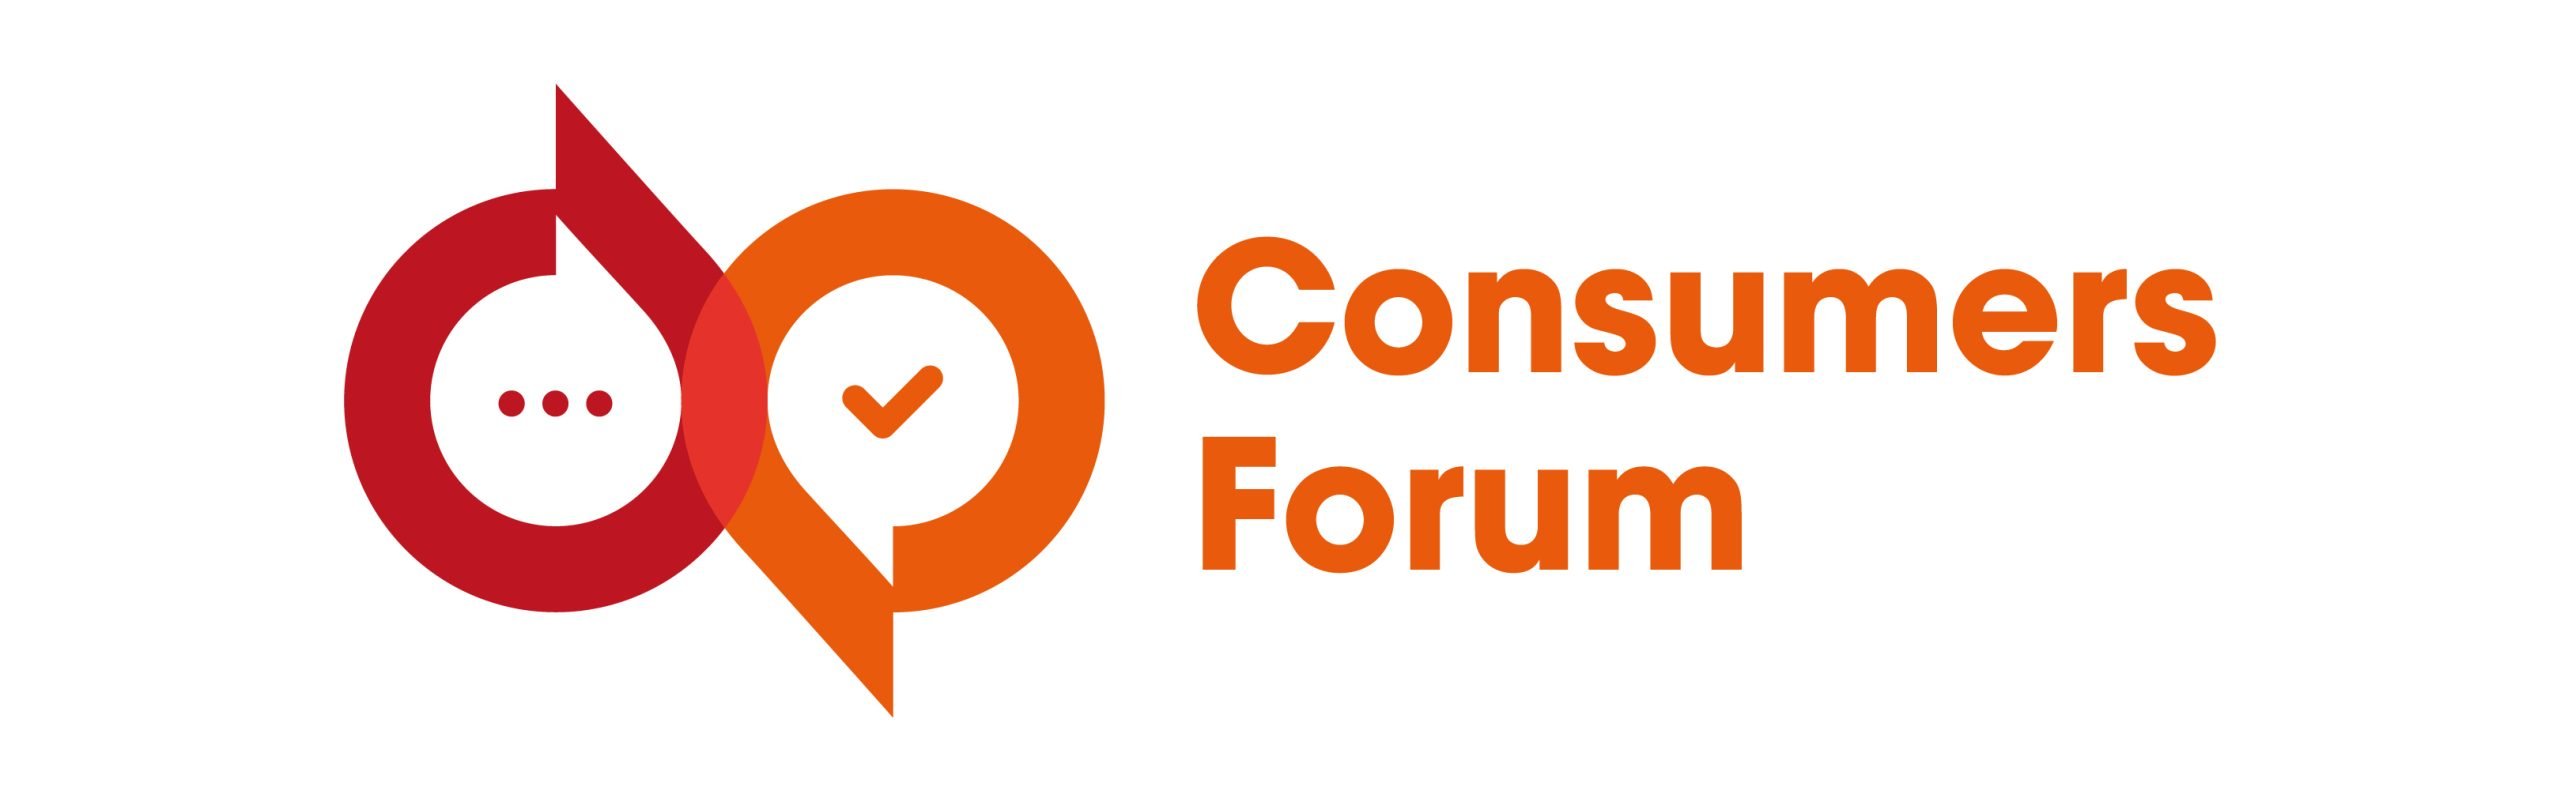 Consumers Forum Poland